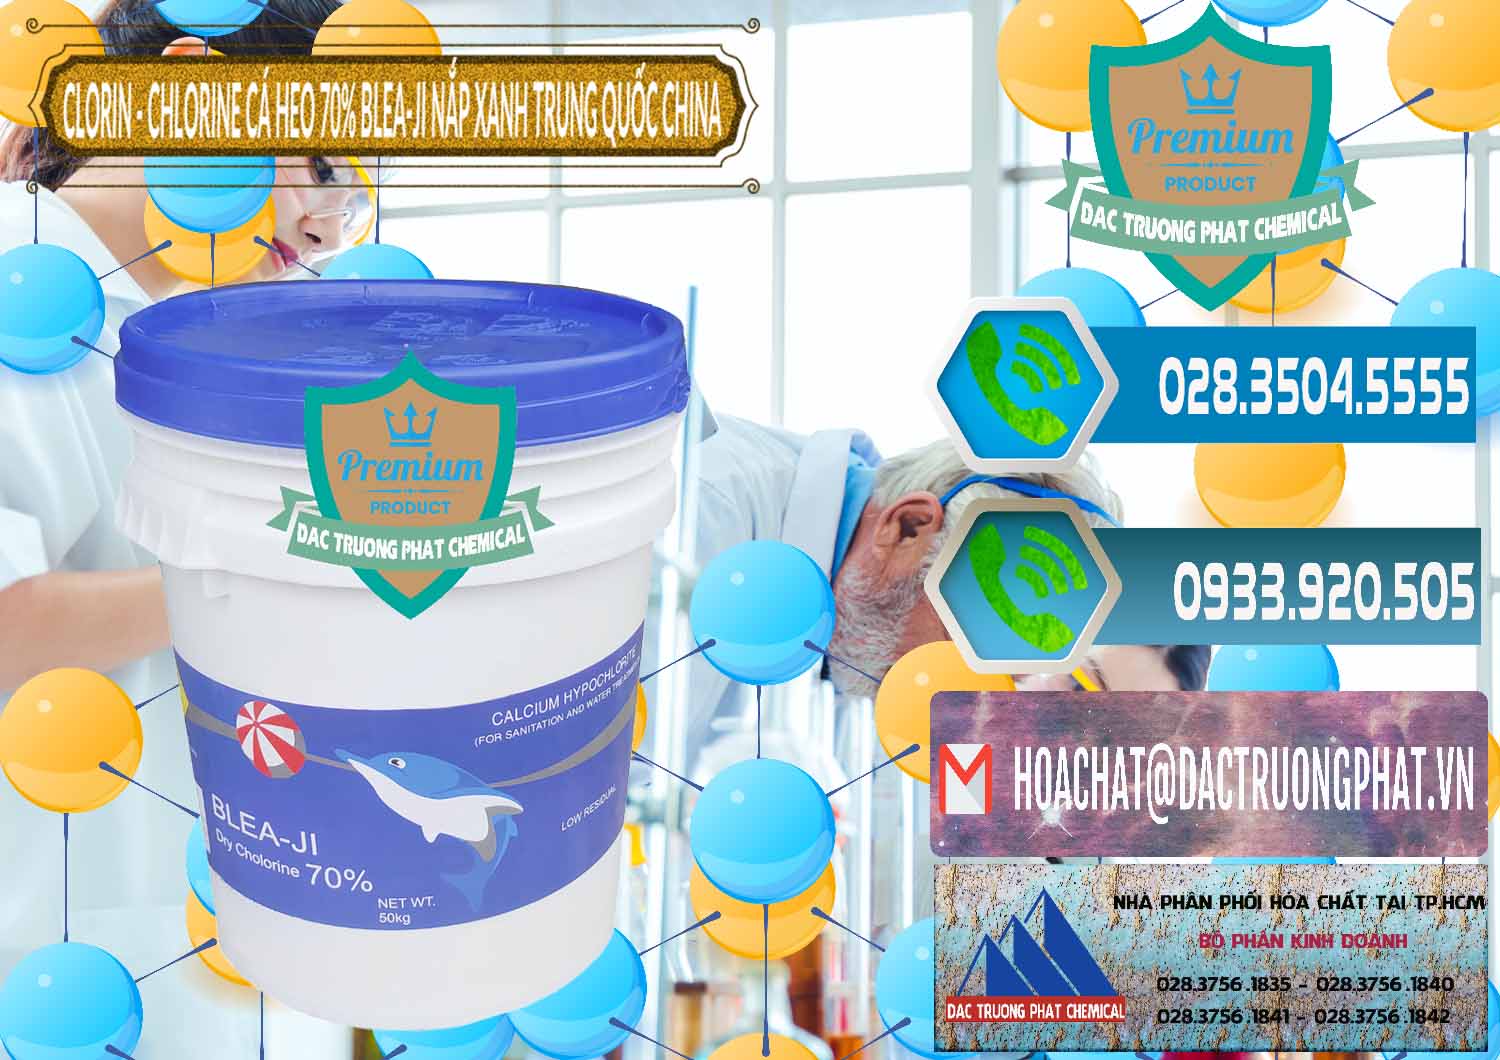 Công ty bán _ cung cấp Clorin - Chlorine Cá Heo 70% Cá Heo Blea-Ji Thùng Tròn Nắp Xanh Trung Quốc China - 0208 - Công ty kinh doanh ( phân phối ) hóa chất tại TP.HCM - congtyhoachat.net